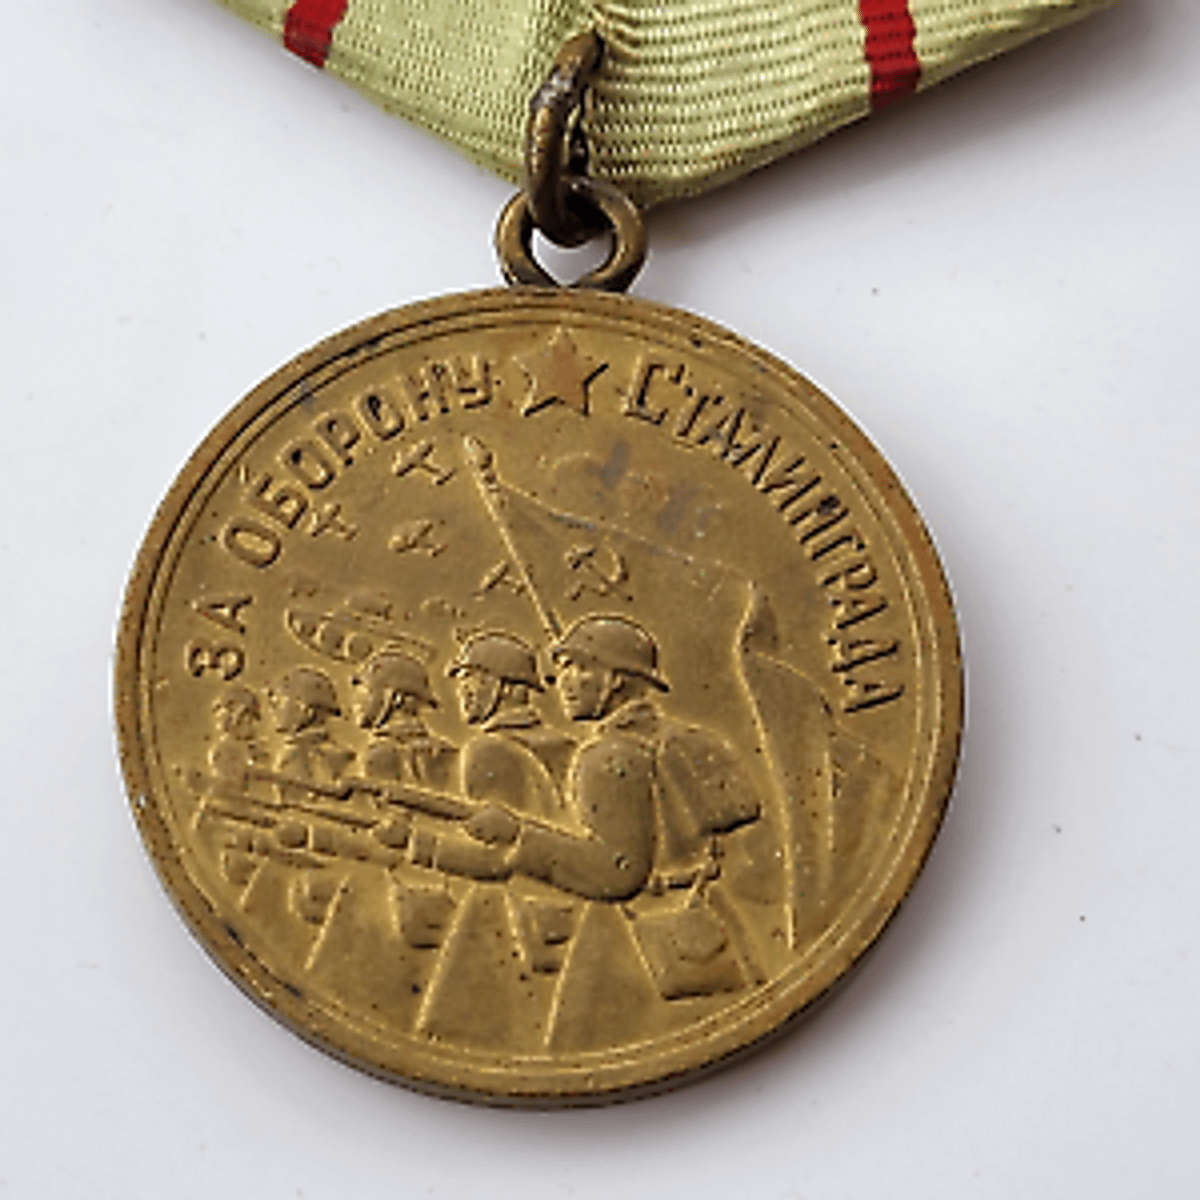 Medalha Soviética Para a Participação Na Segunda Guerra Mundial Tradução -  Imagem de Stock - Imagem de fundo, adversidade: 86253577